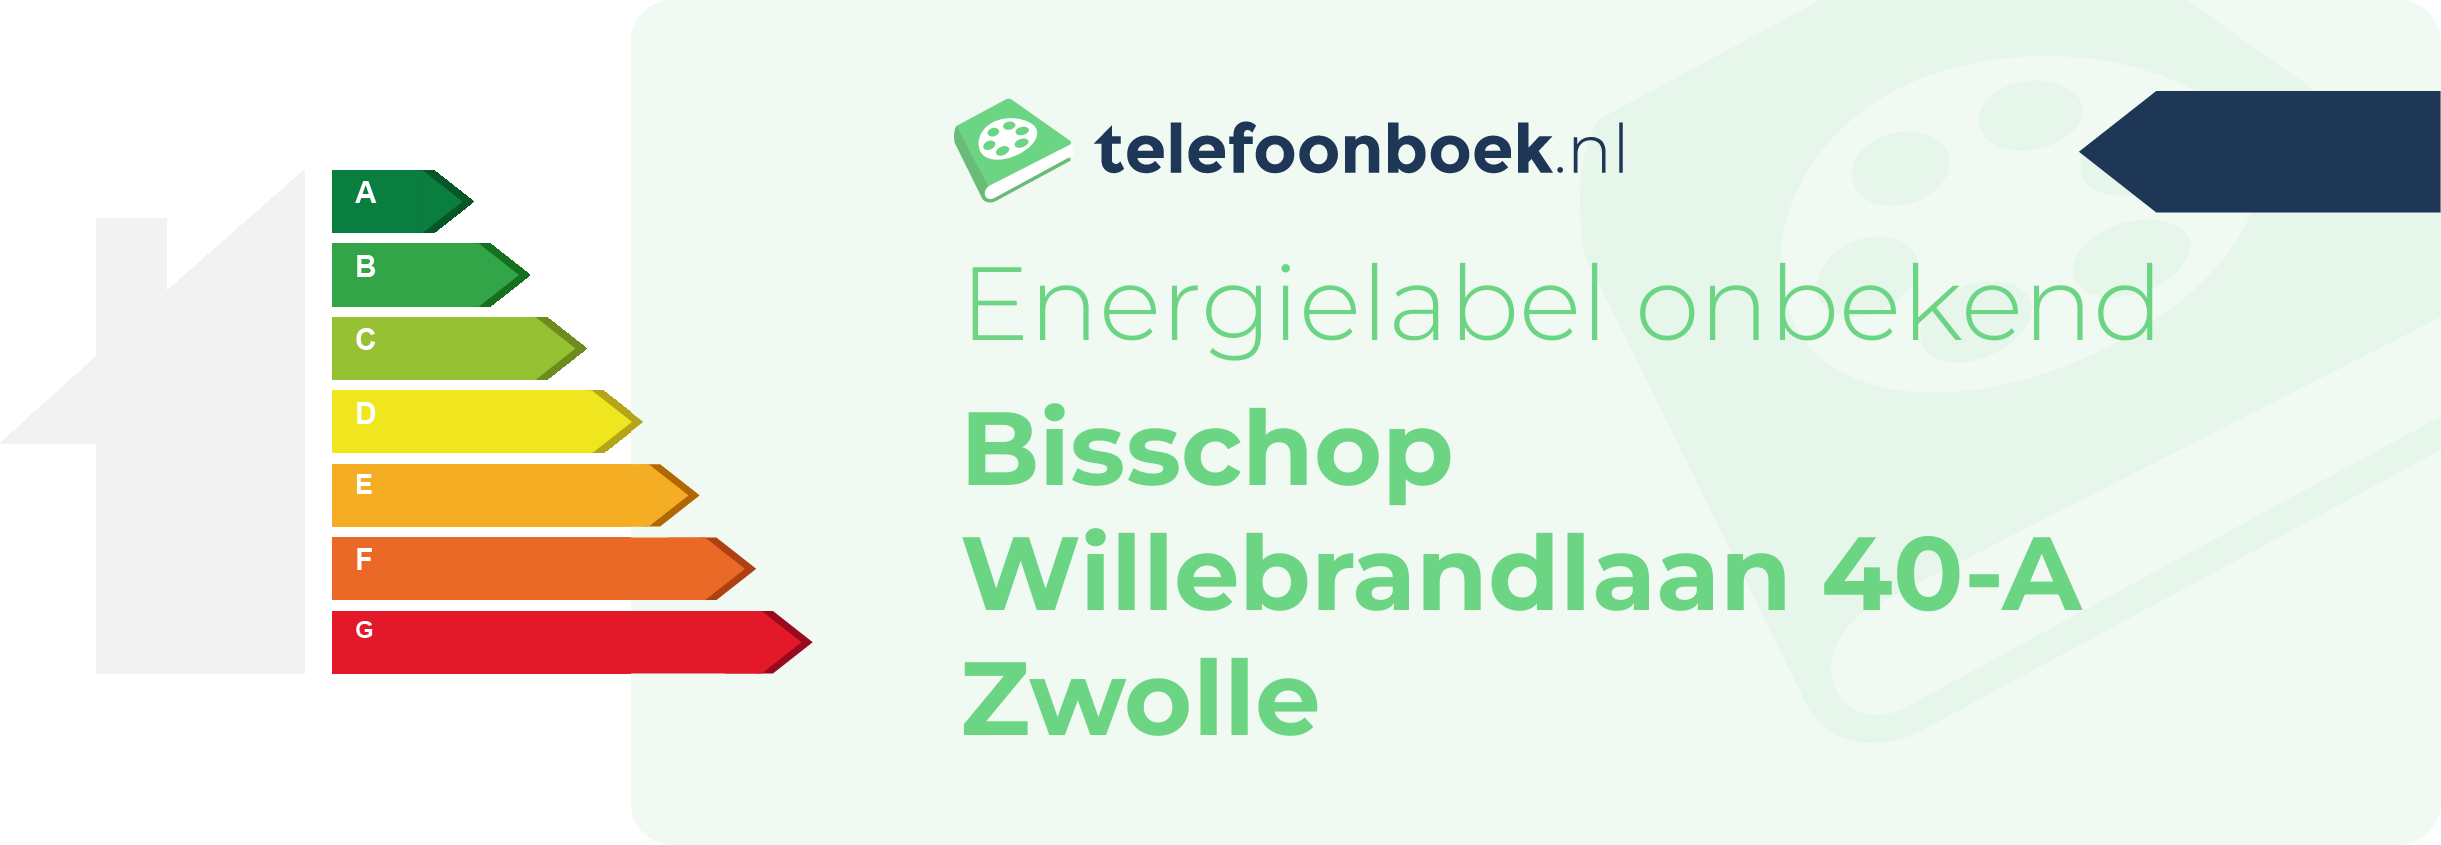 Energielabel Bisschop Willebrandlaan 40-A Zwolle